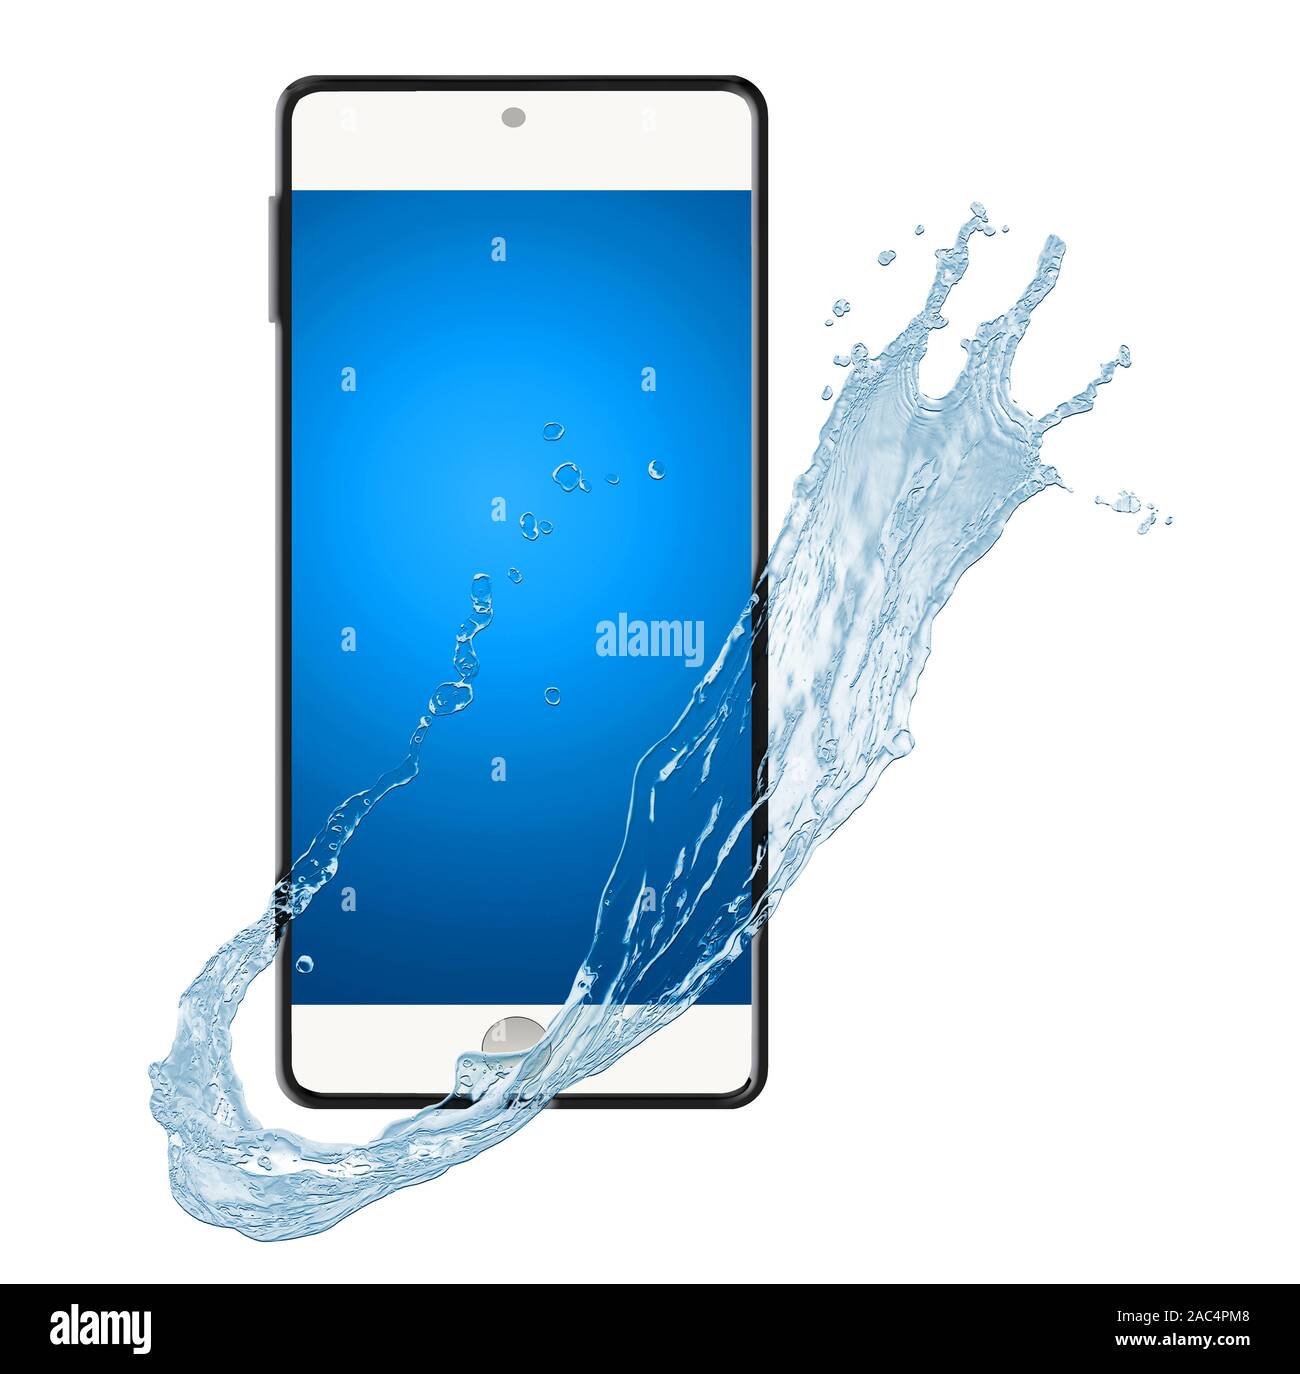 Un téléphone cellulaire est vu avec une éclaboussure de l'eau pour illustrer les propriétés imperméables de téléphones portables. Isolé sur un fond blanc. Banque D'Images